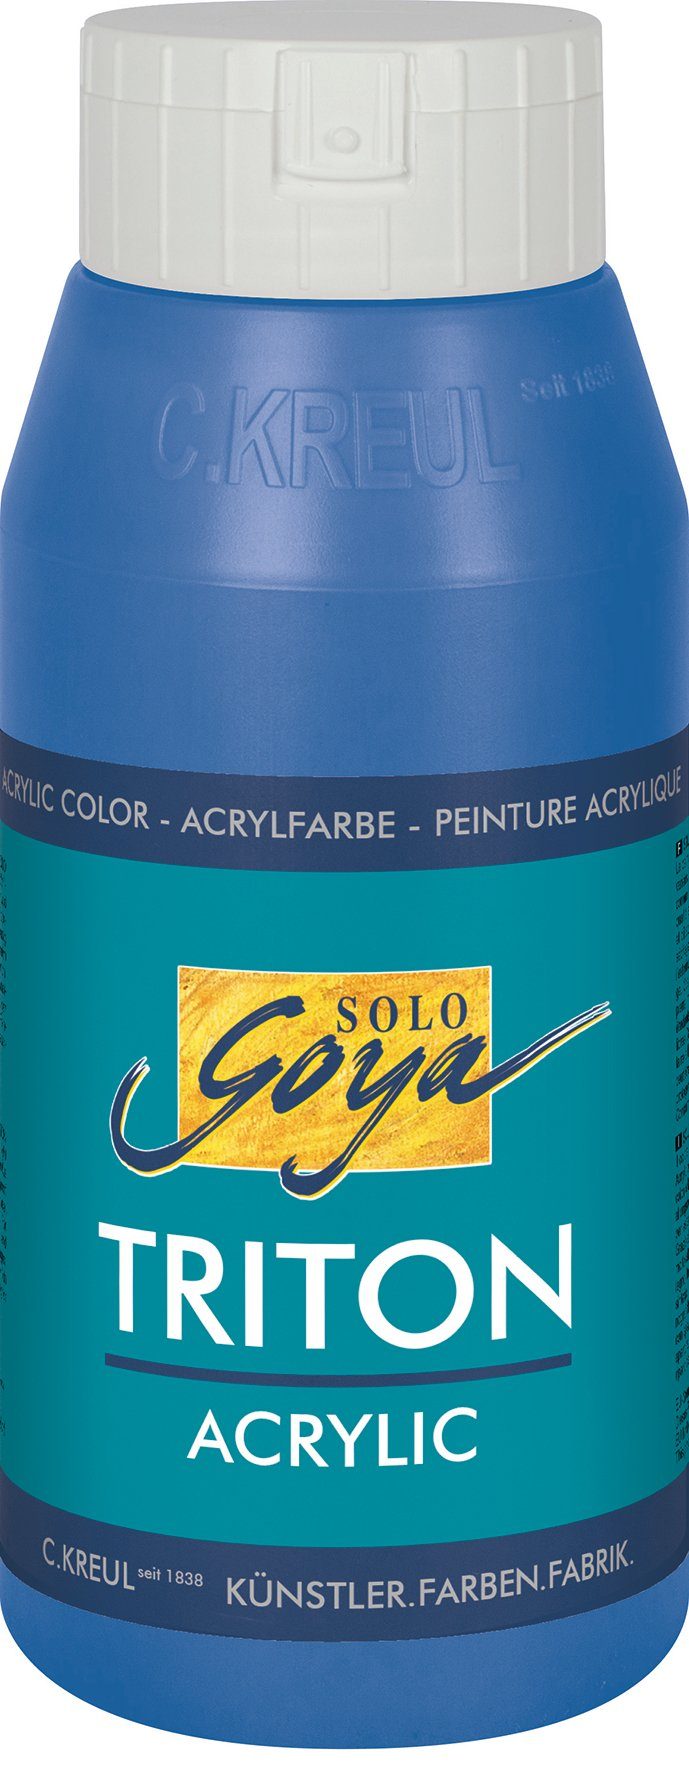 Kreul Acrylfarbe Solo Goya Triton Acrylic, 750 ml Coelinblau